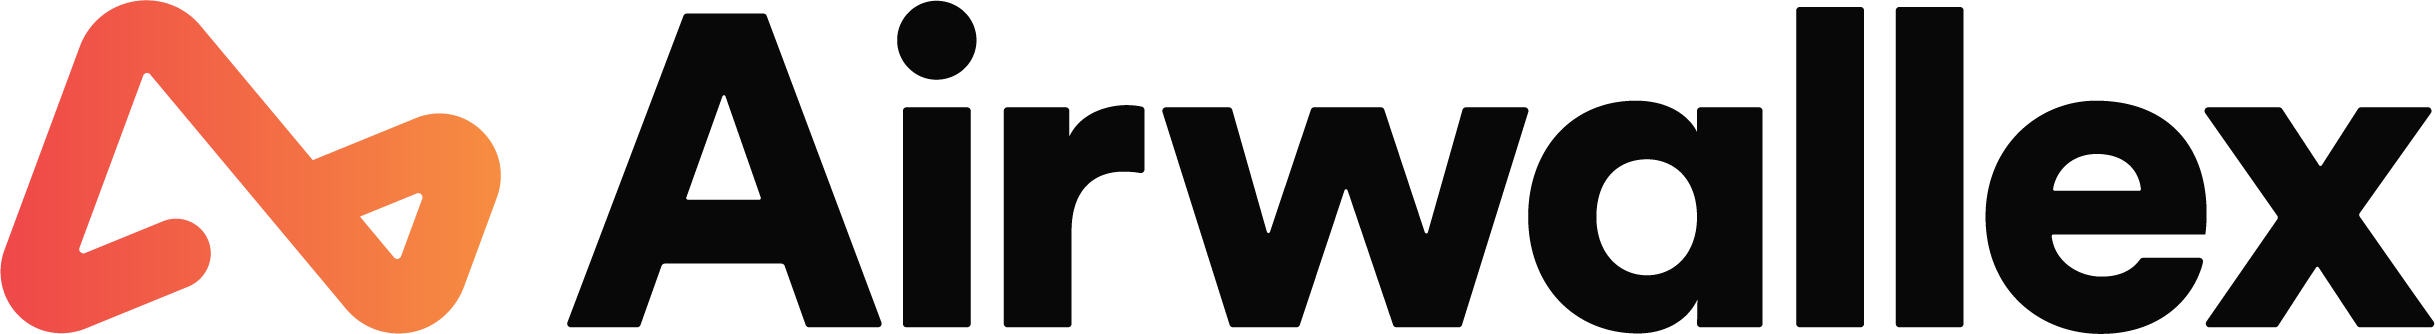 Airwallex's logo